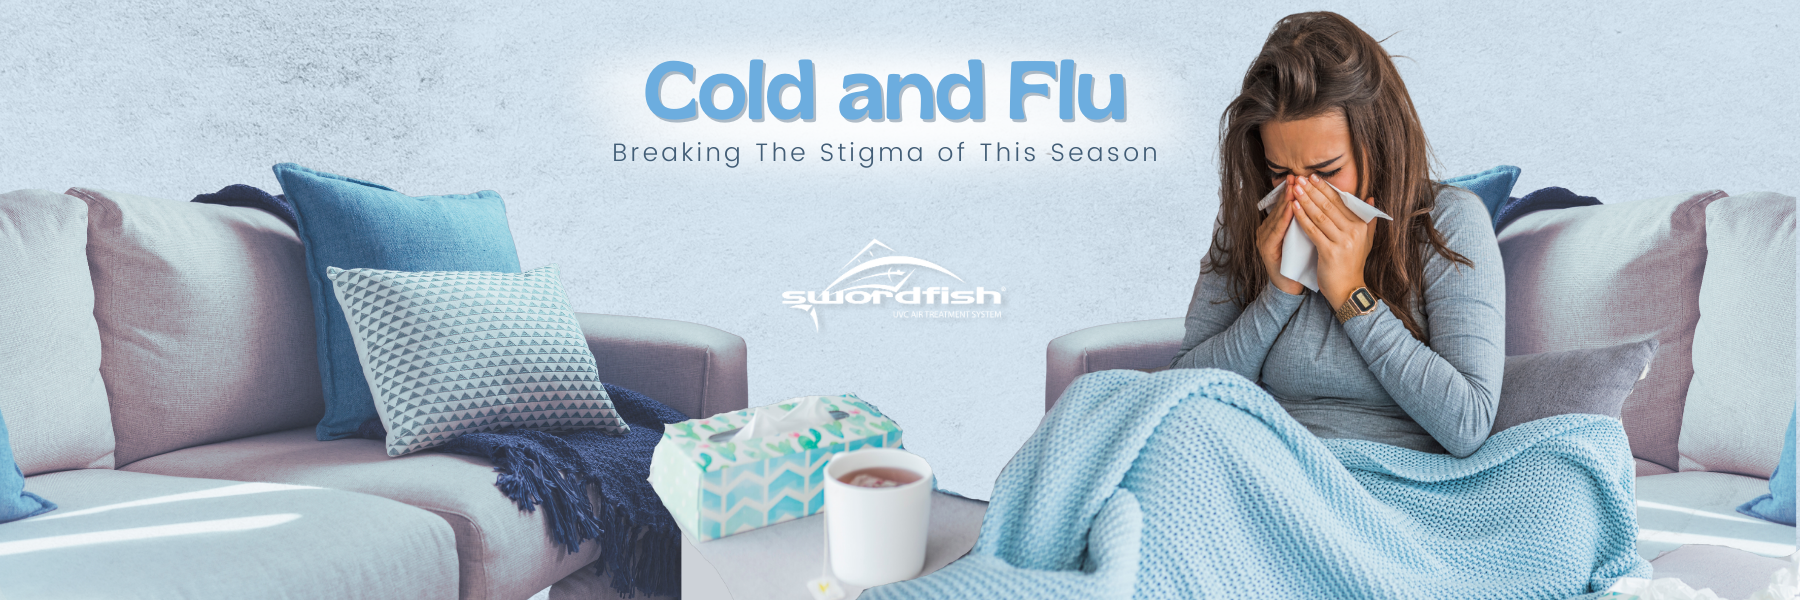 Cold and Flu Blog Header Image